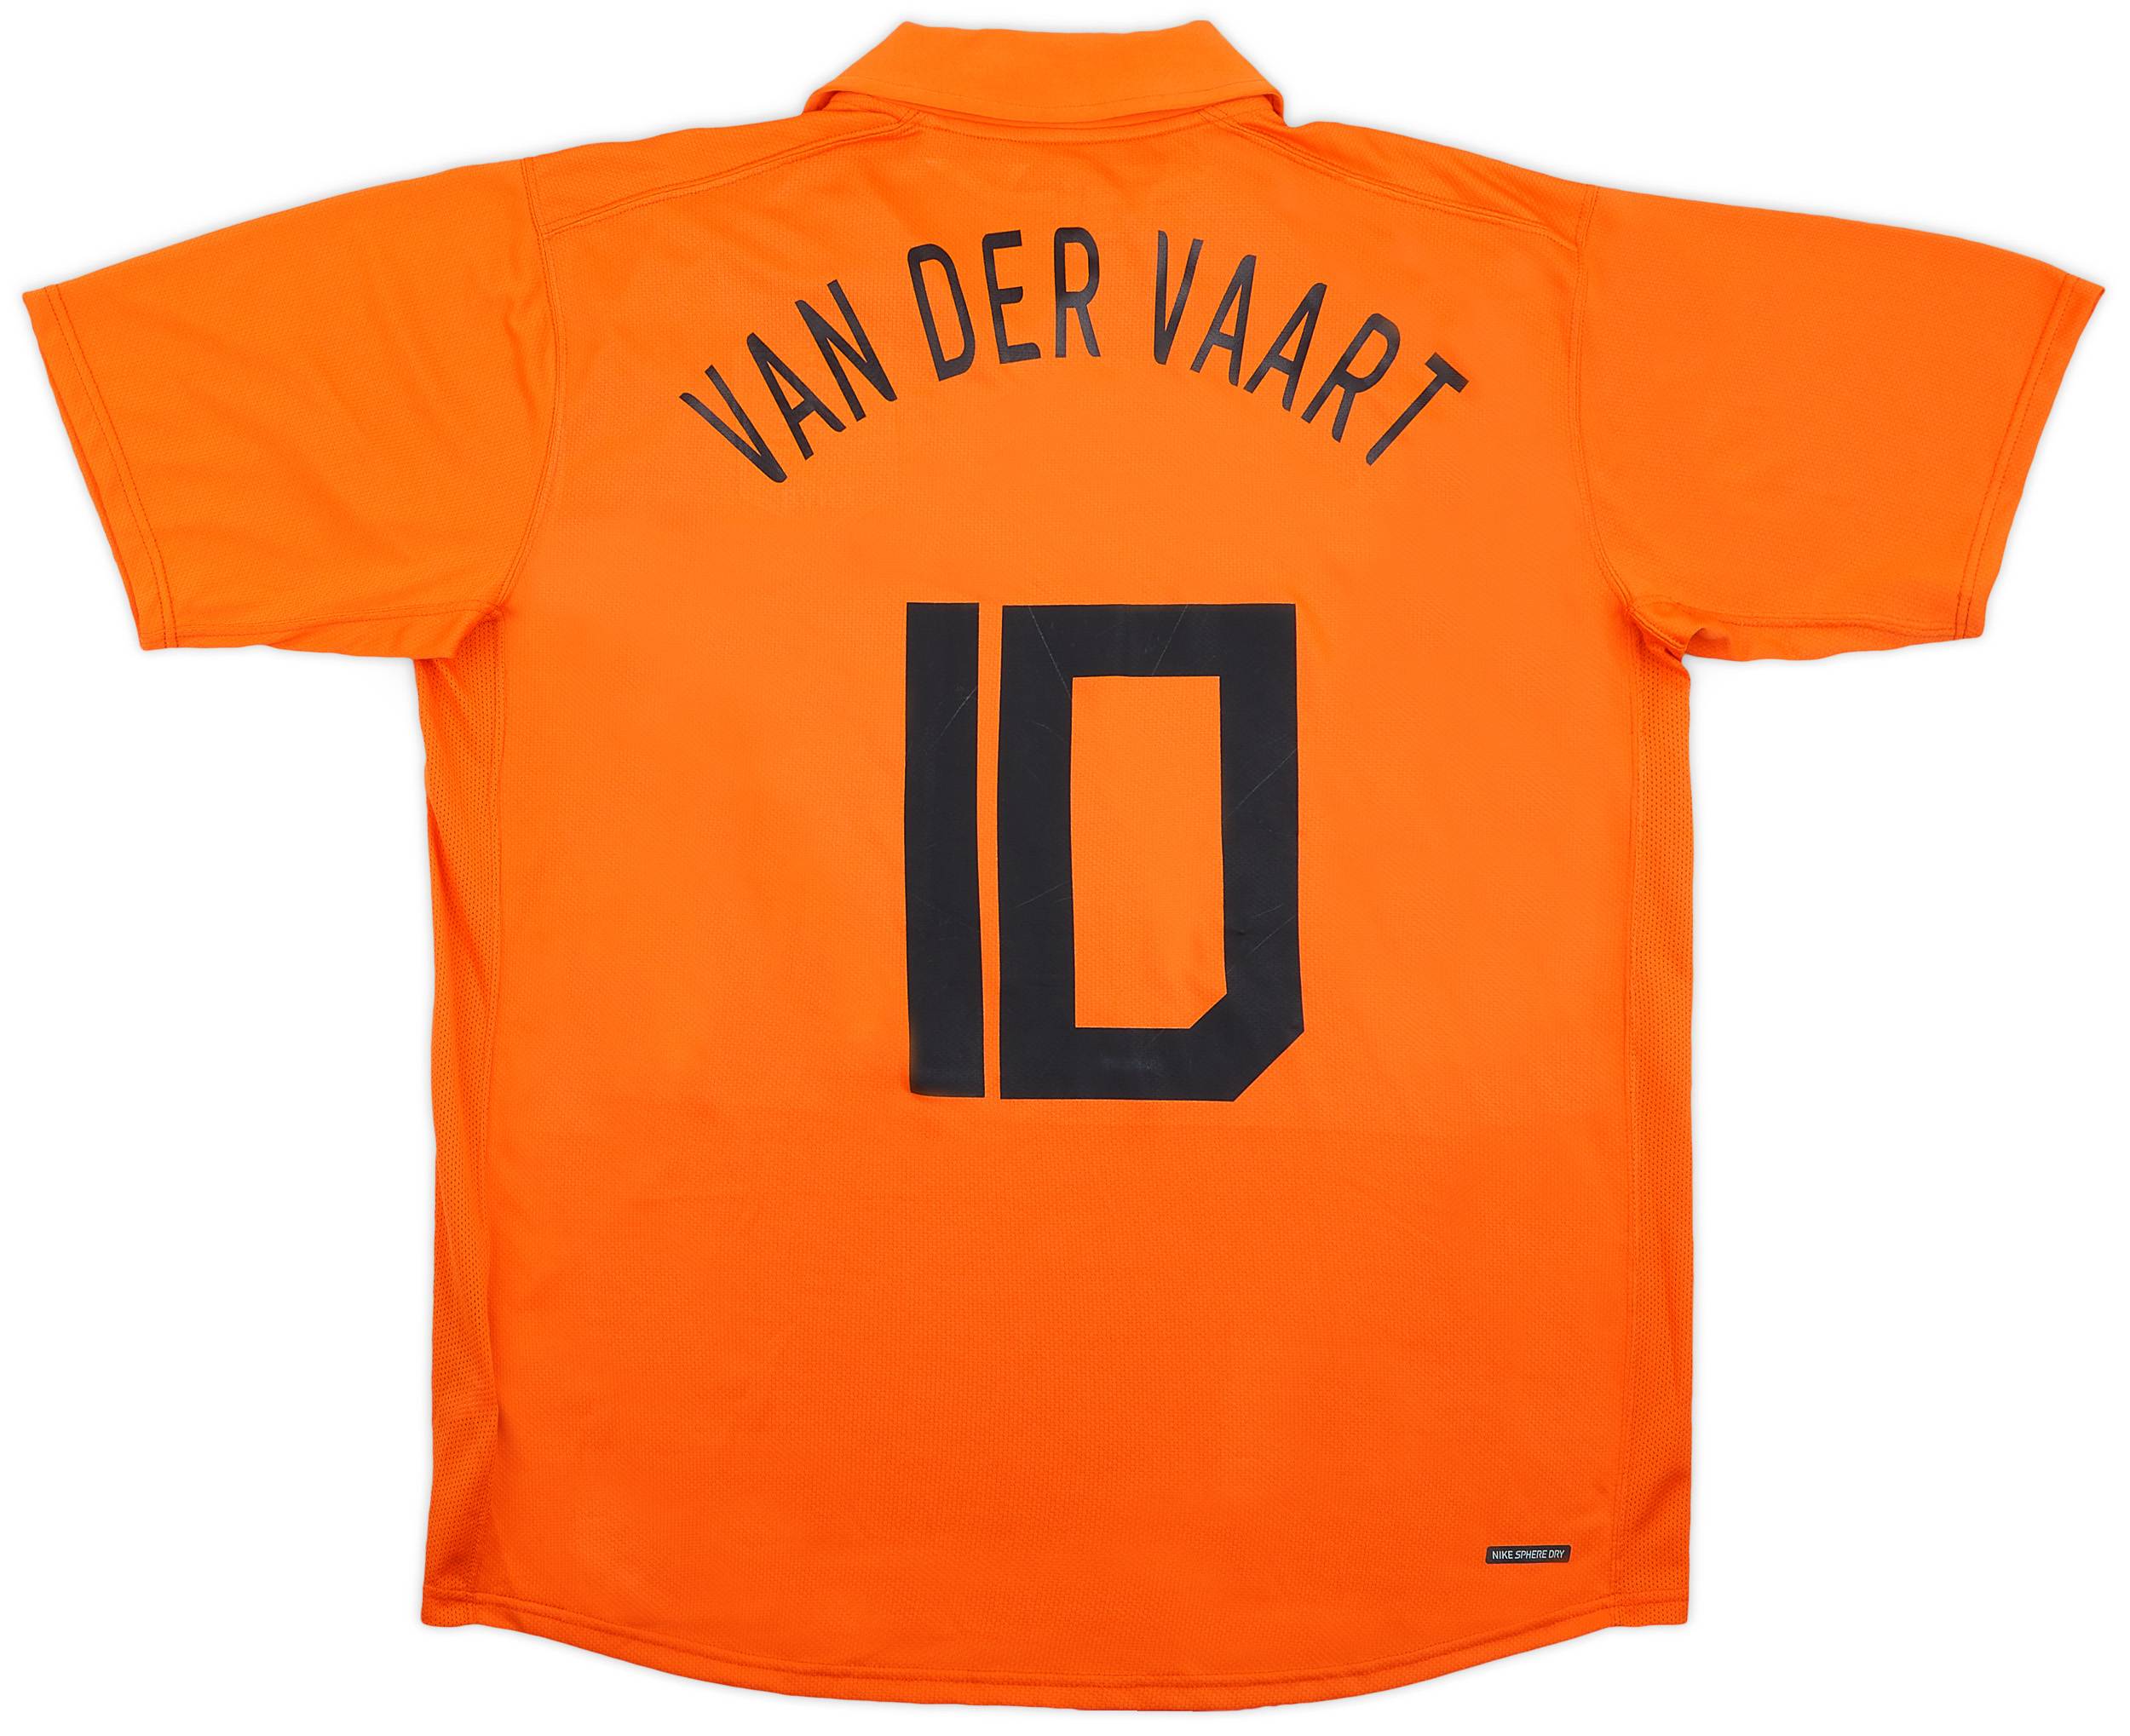 2006-08 Netherlands Home Shirt Van der Vaart #10 - 9/10 - (XL)